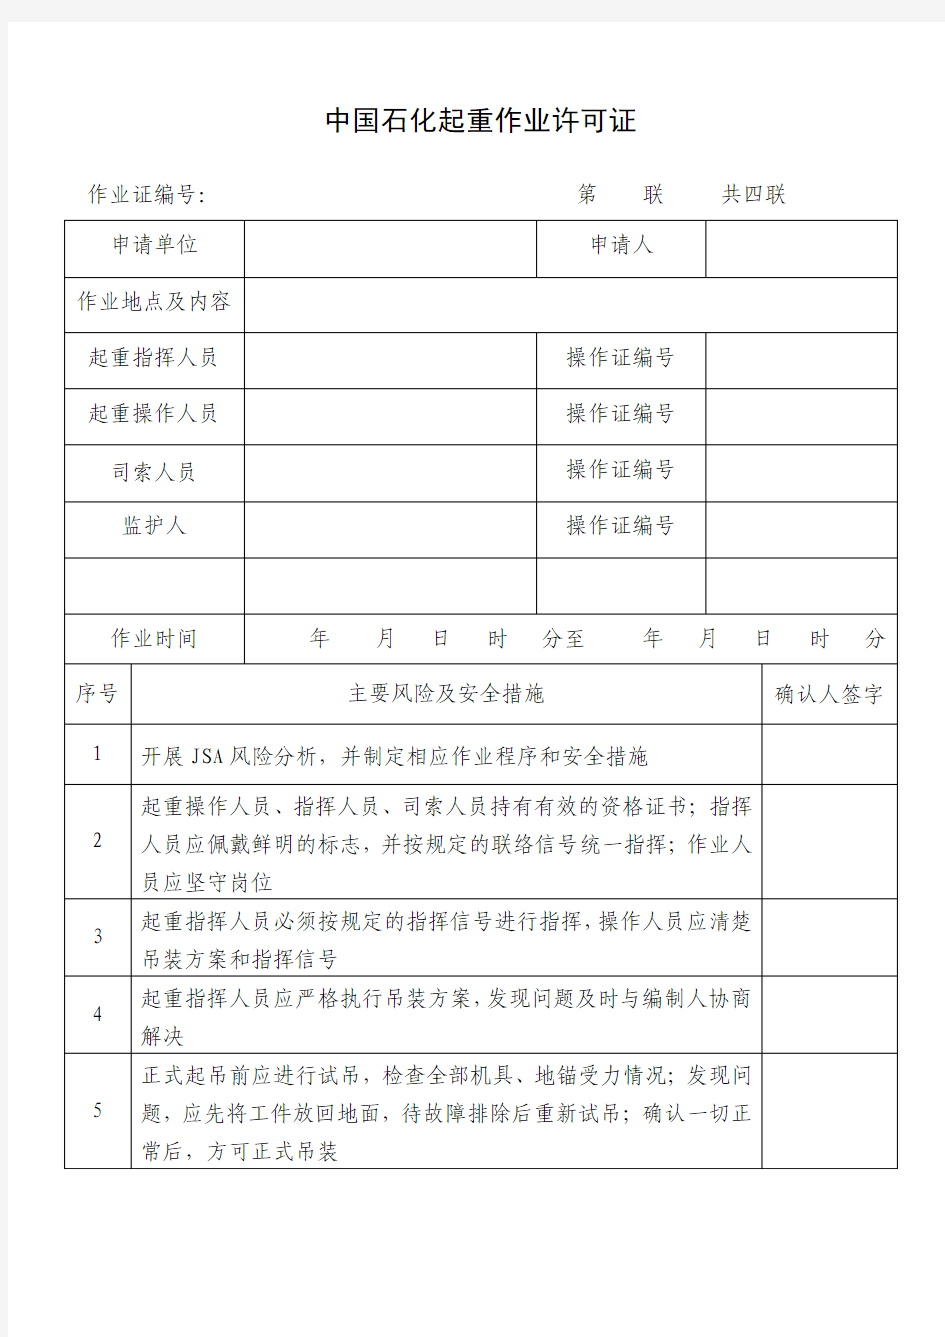 中国石化起重作业许可证2016版